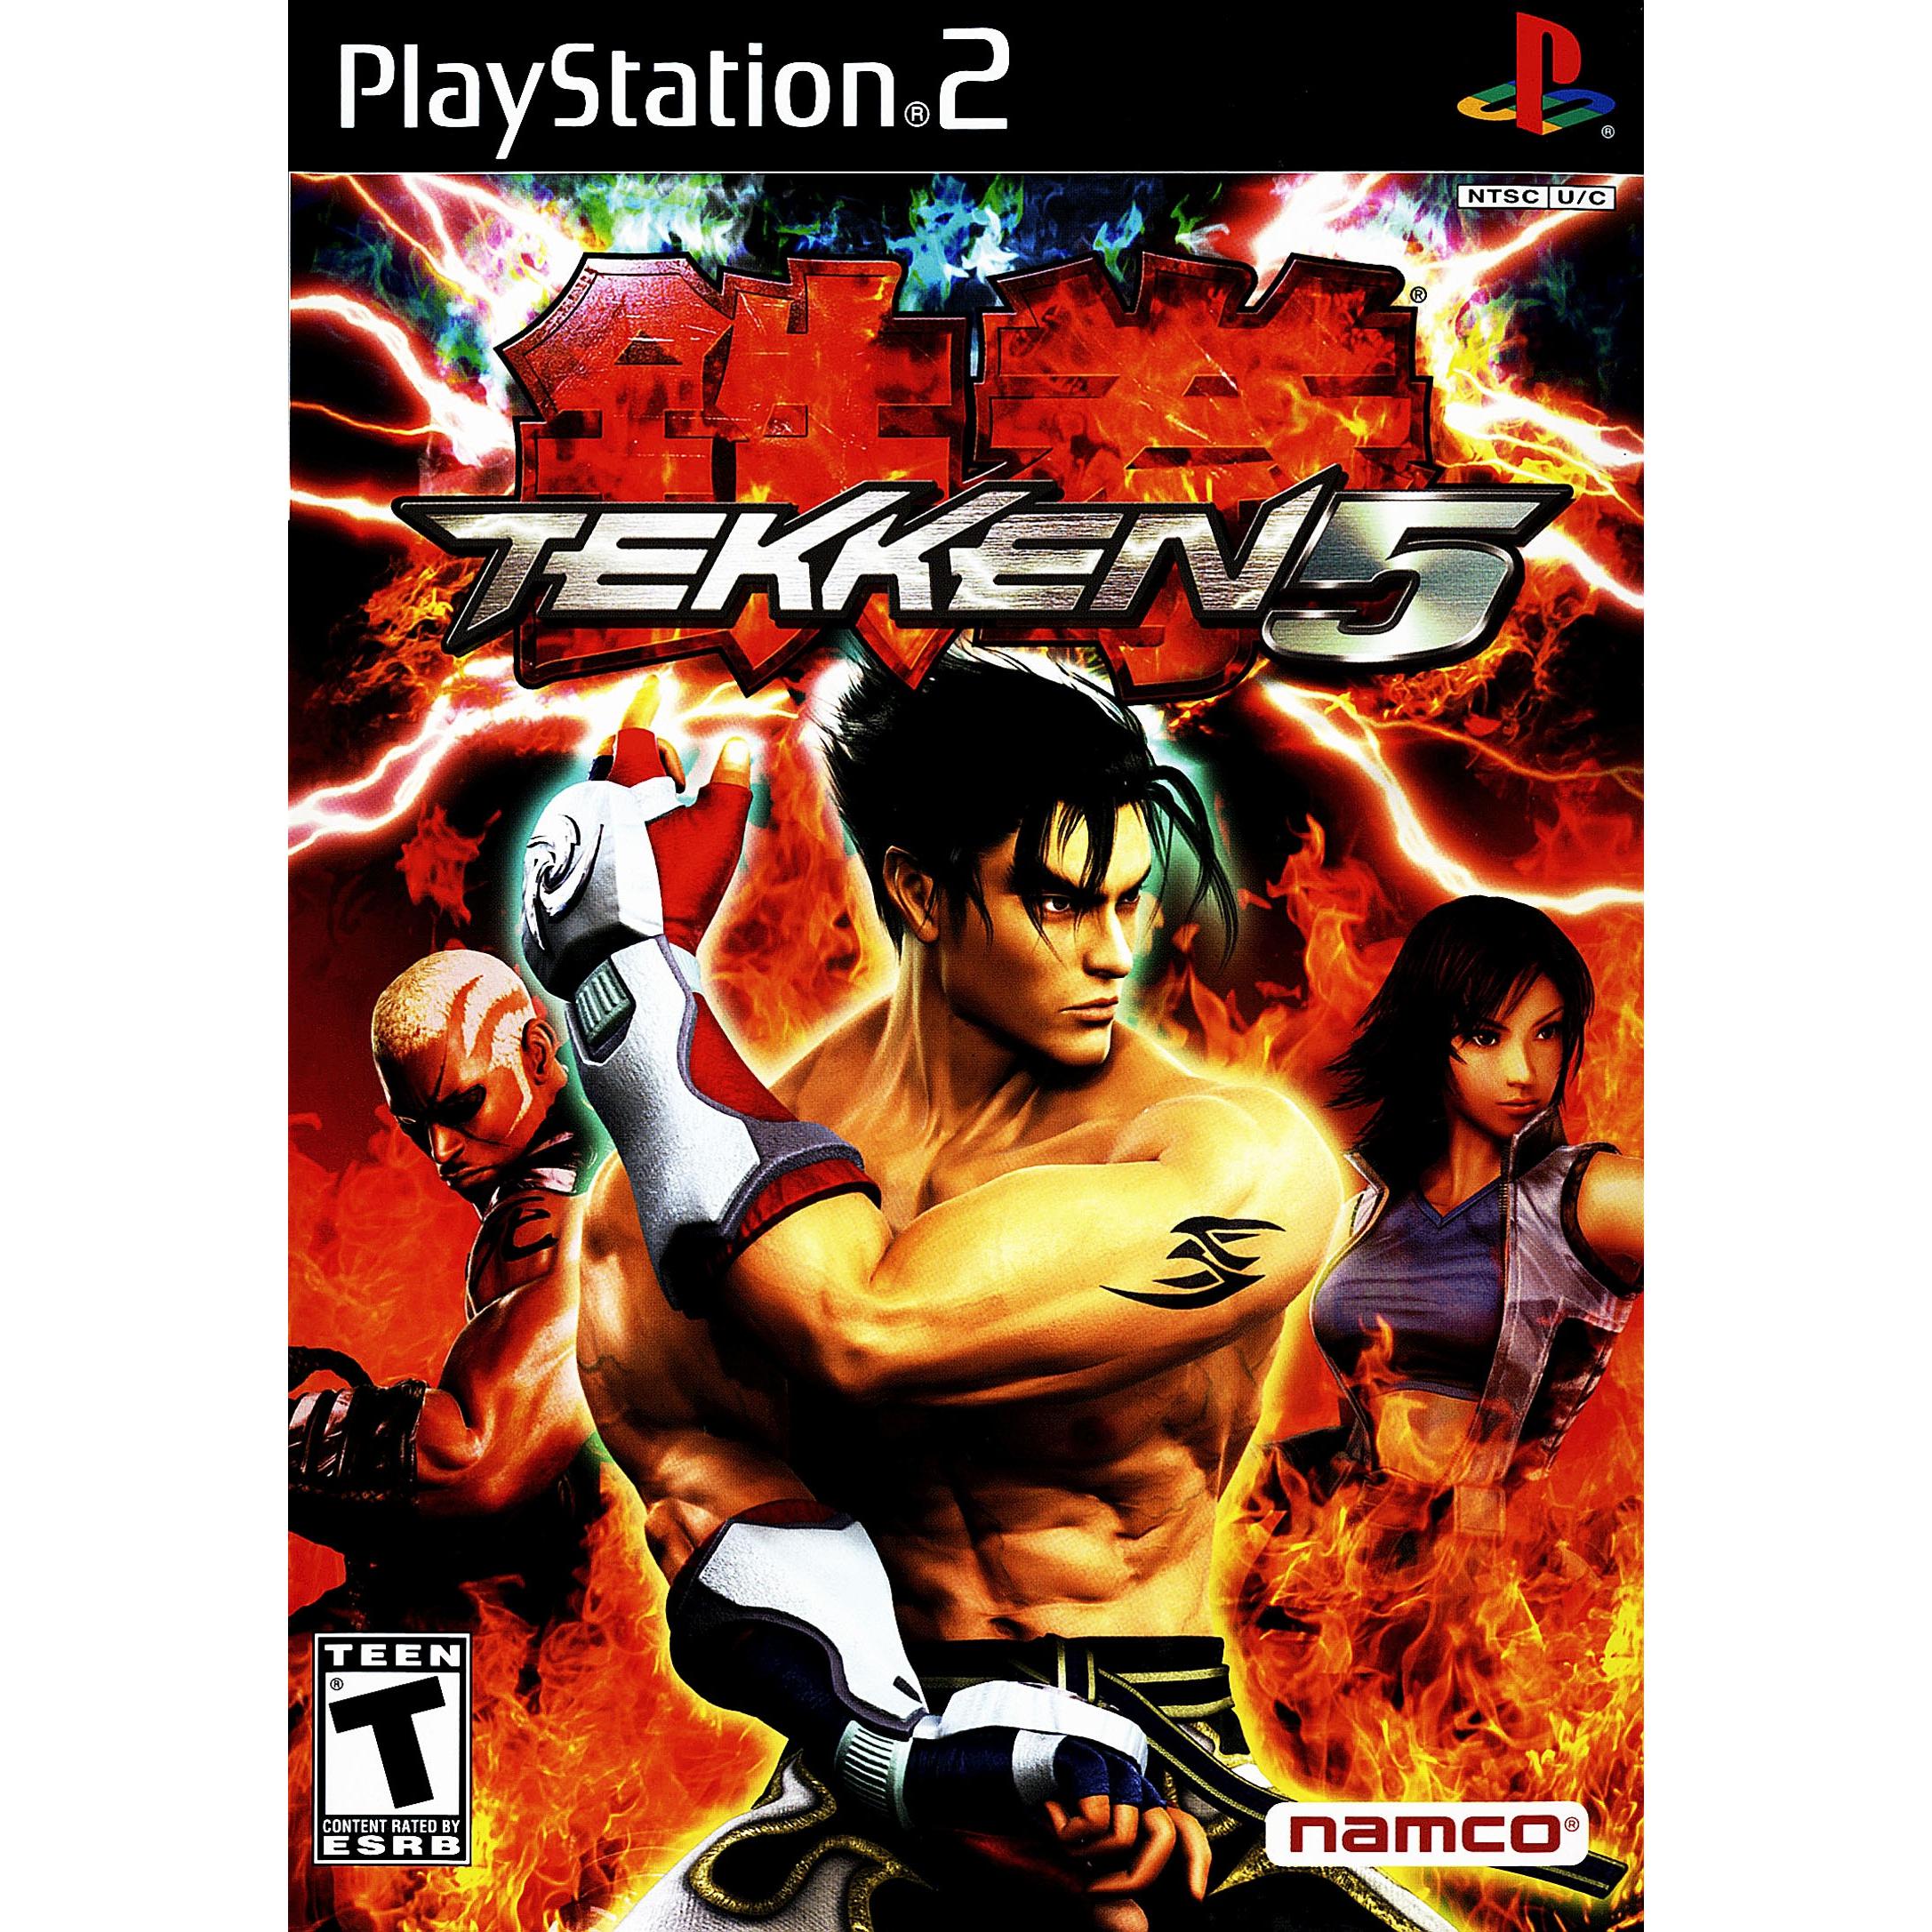 Tekken 5 - PlayStation 2 (PS2) Game